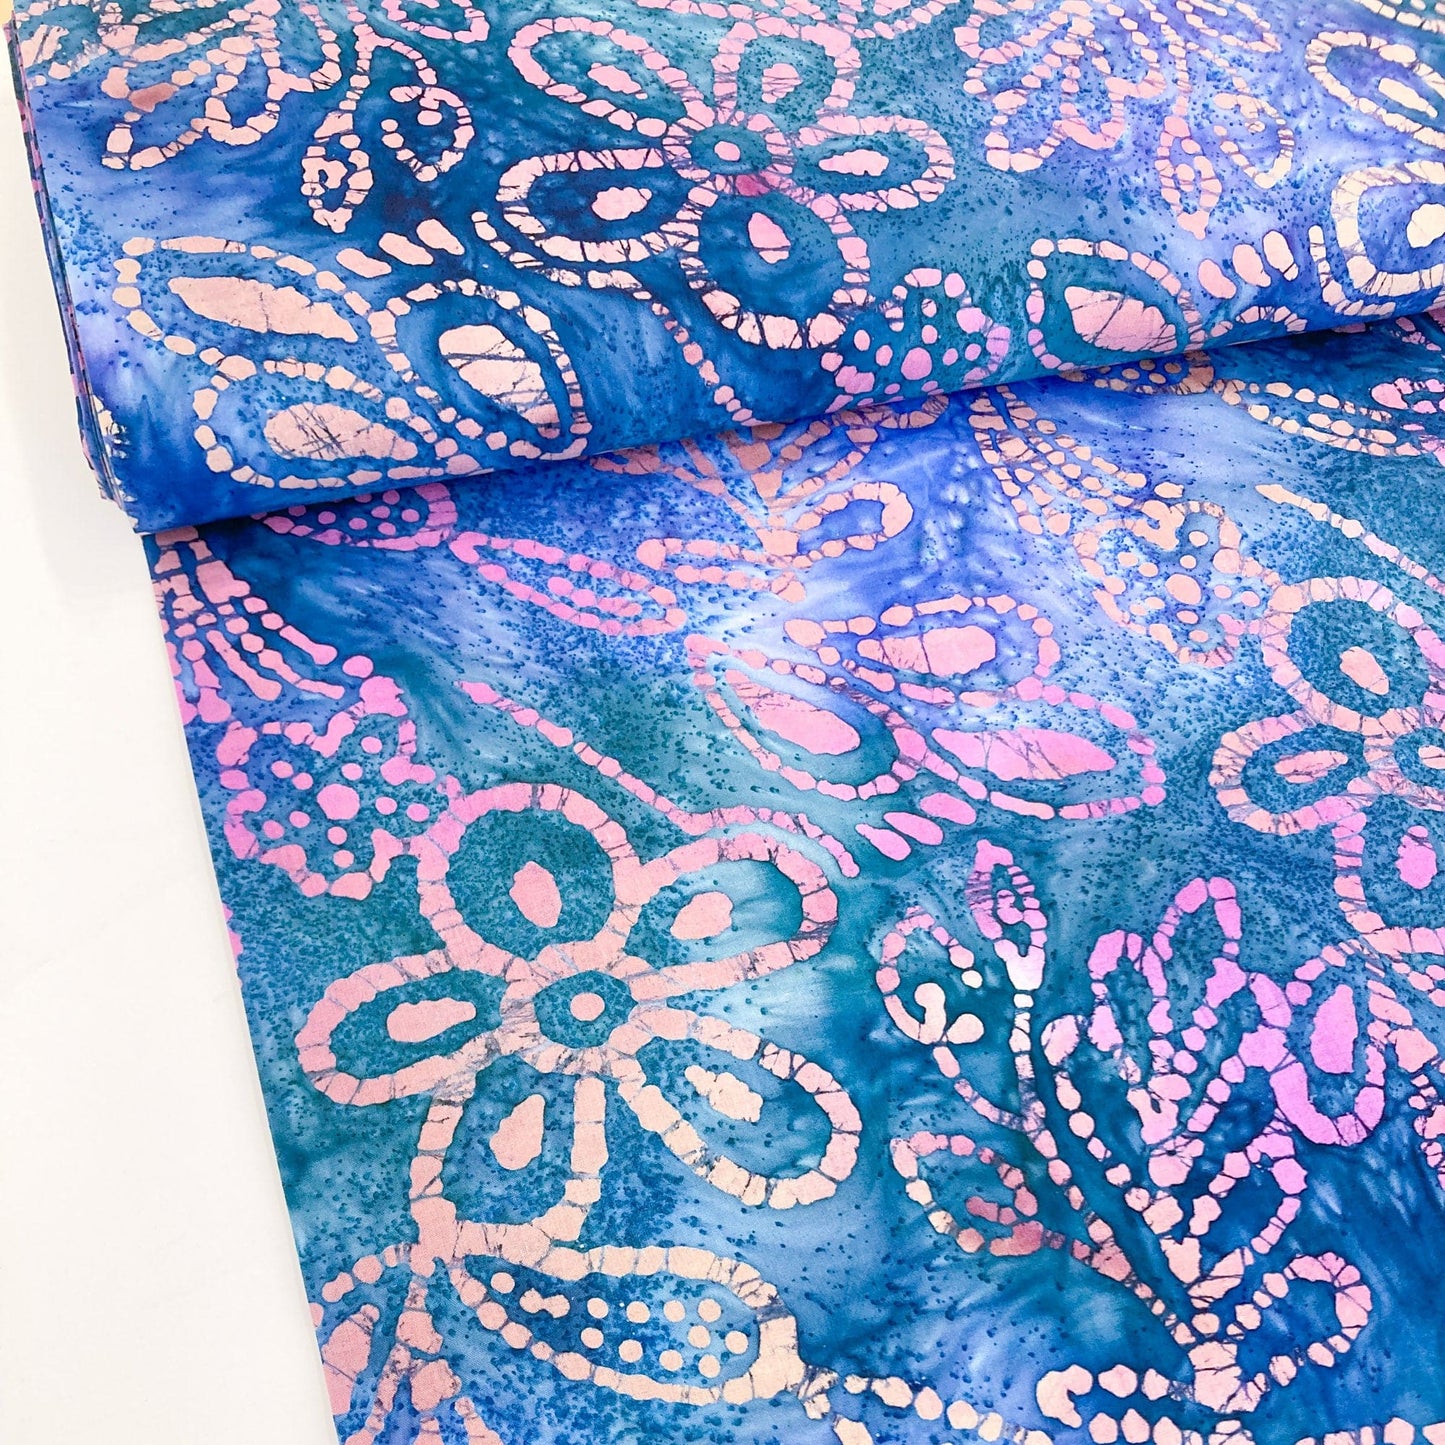 Cotton Batik with Purple and Blue Floral Design